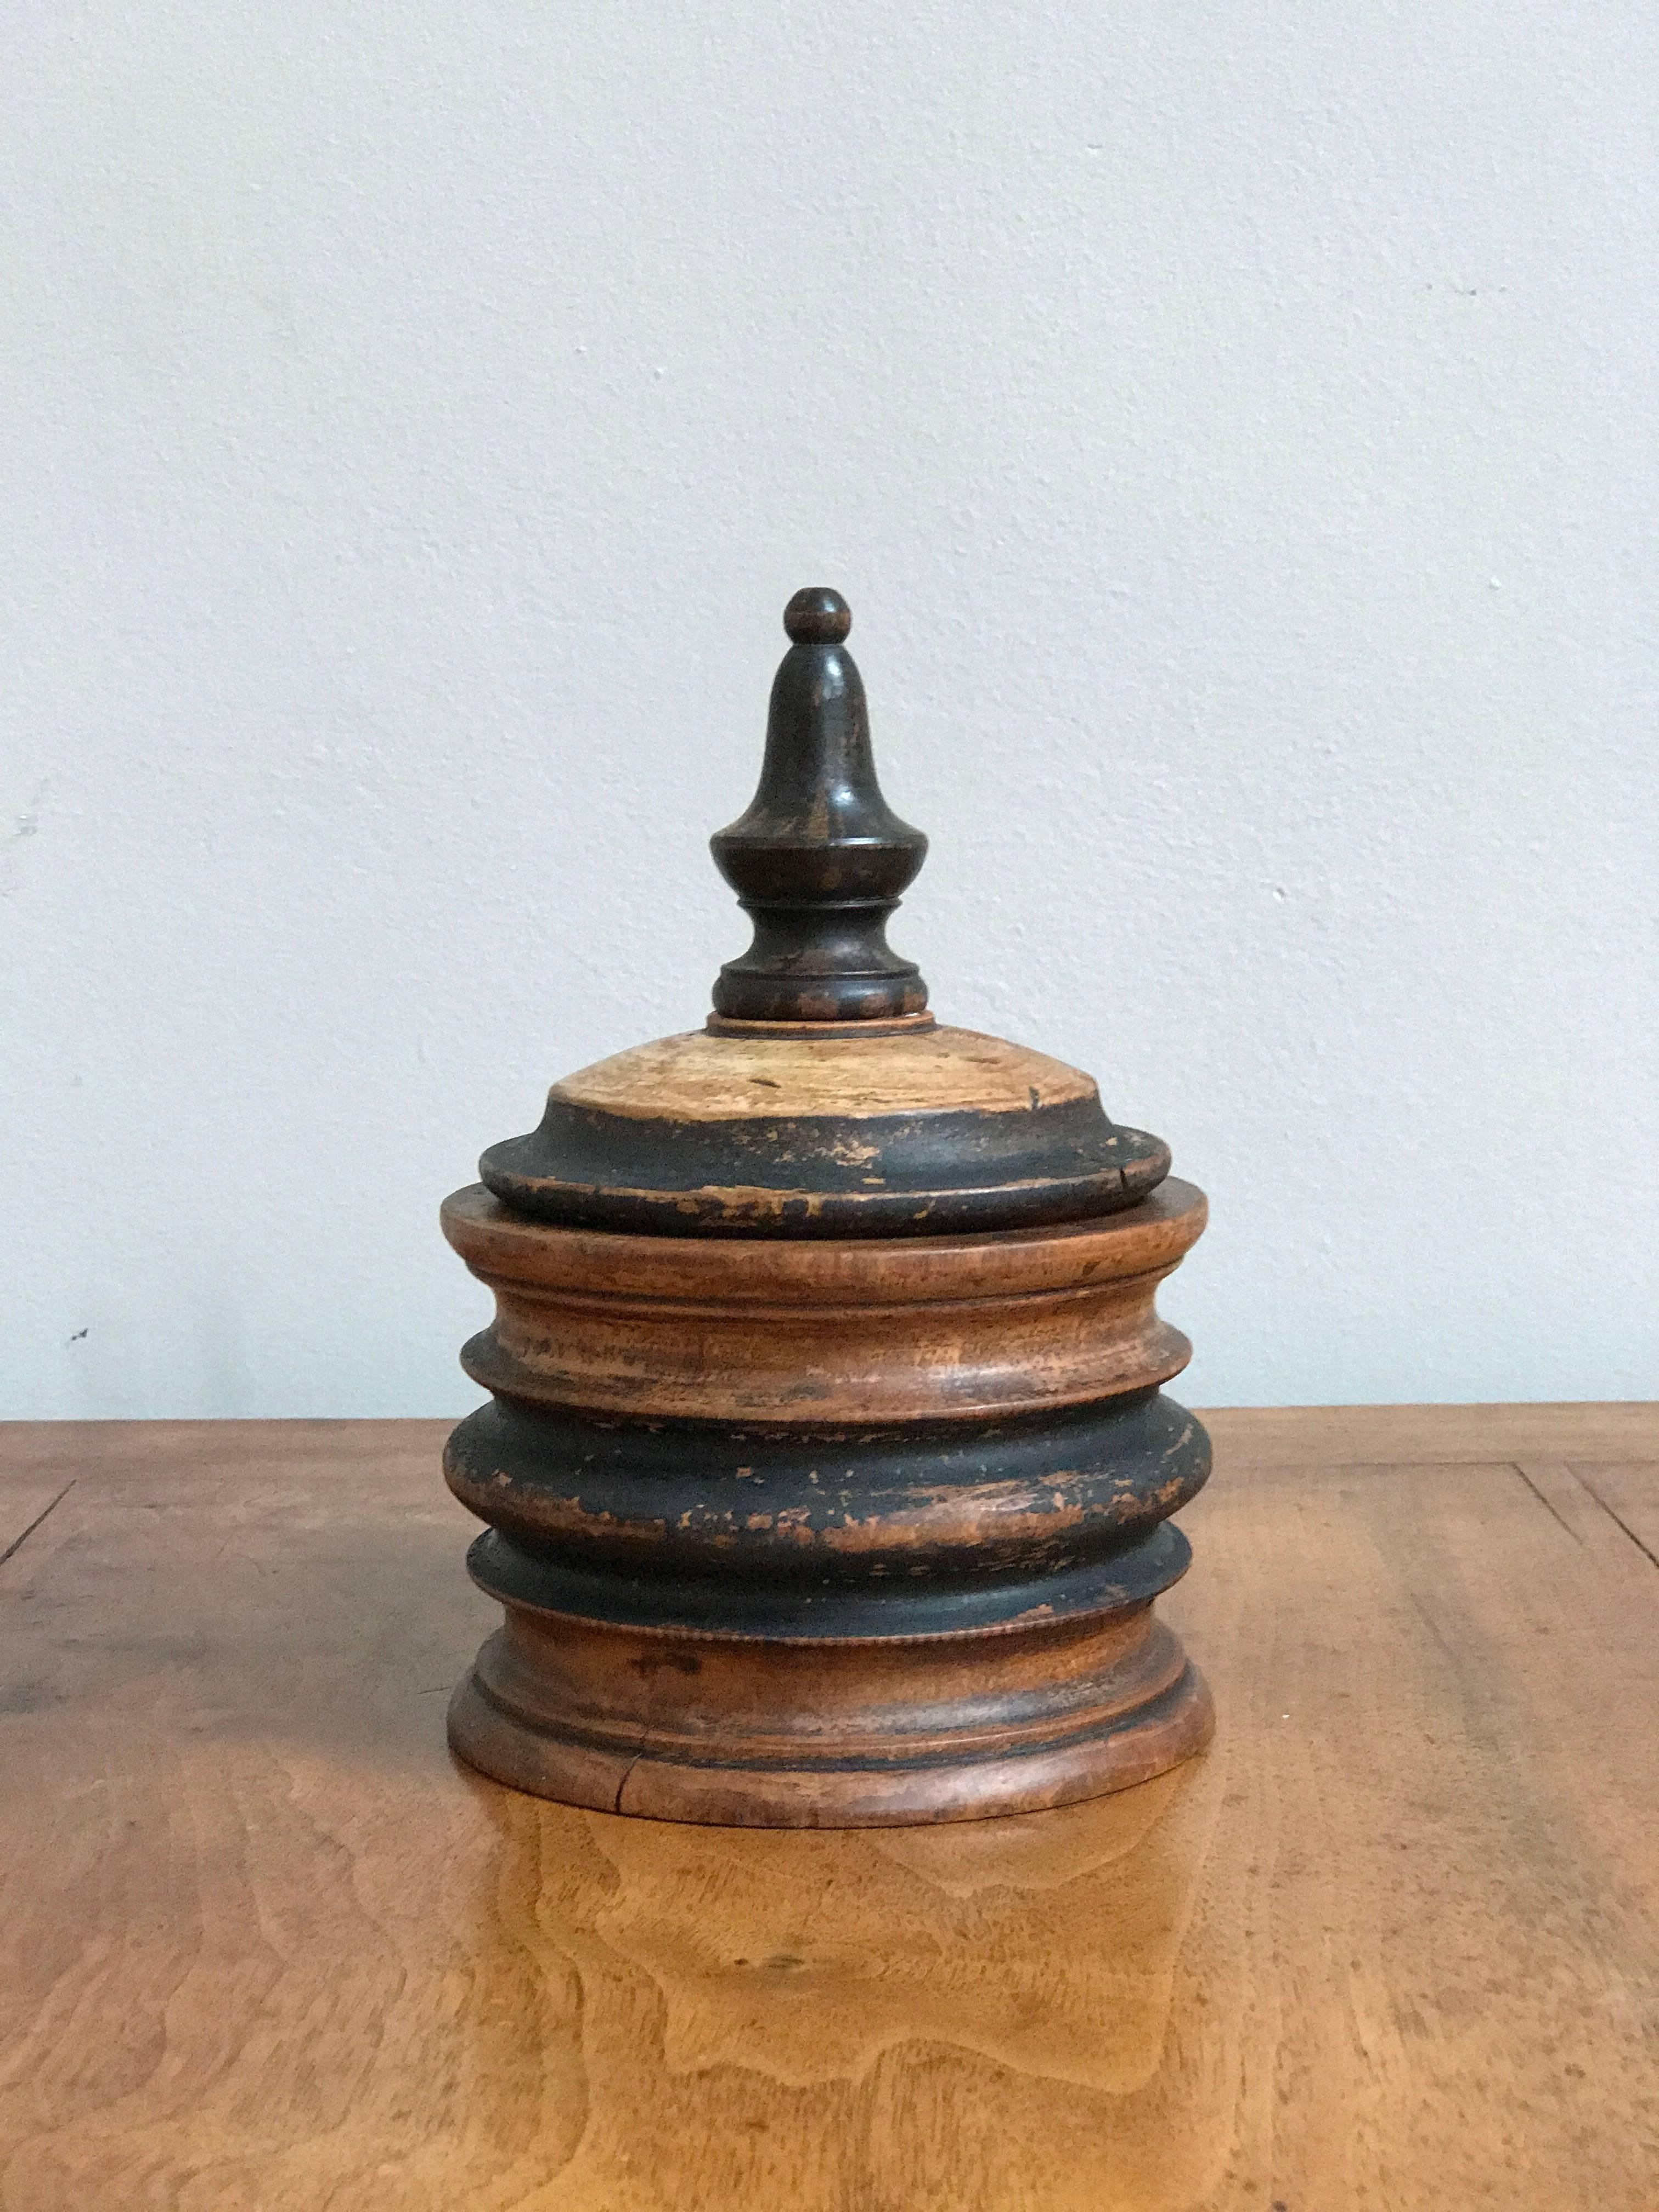 A wooden tobacco jar. Belgium, circa 1890.